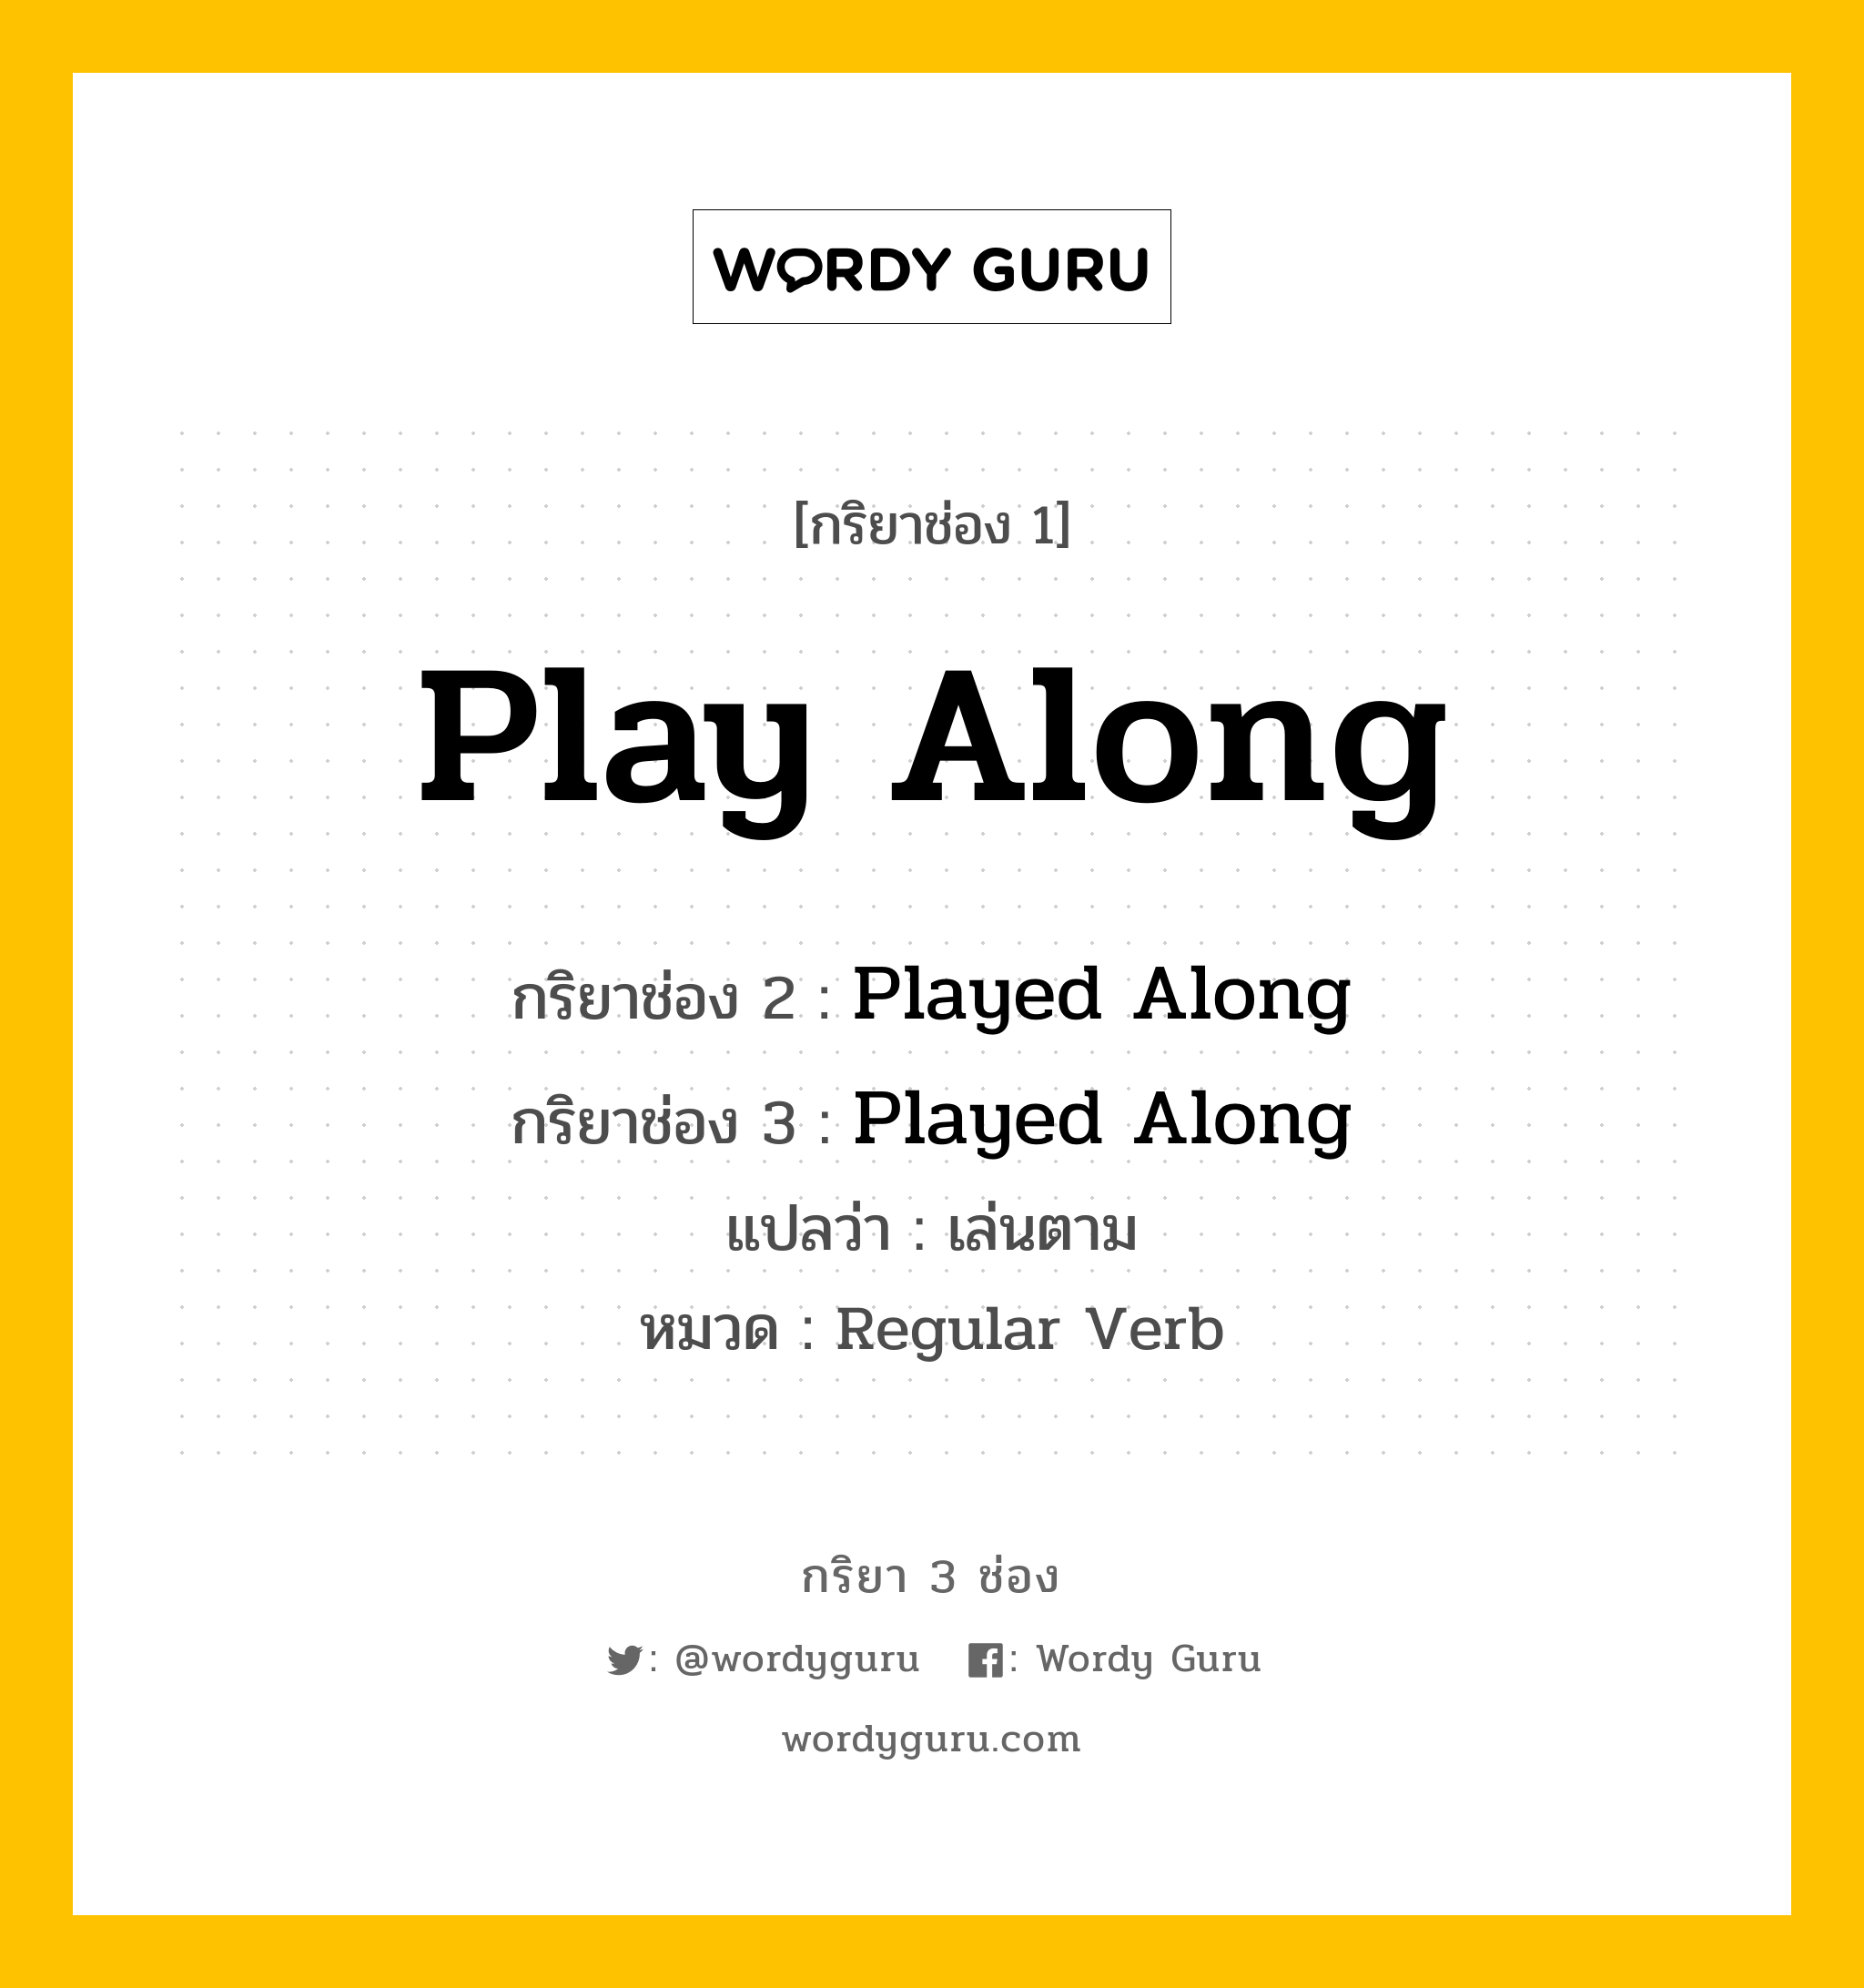 กริยา 3 ช่อง ของ Play Along คืออะไร? มาดูคำอ่าน คำแปลกันเลย, กริยาช่อง 1 Play Along กริยาช่อง 2 Played Along กริยาช่อง 3 Played Along แปลว่า เล่นตาม หมวด Regular Verb หมวด Regular Verb